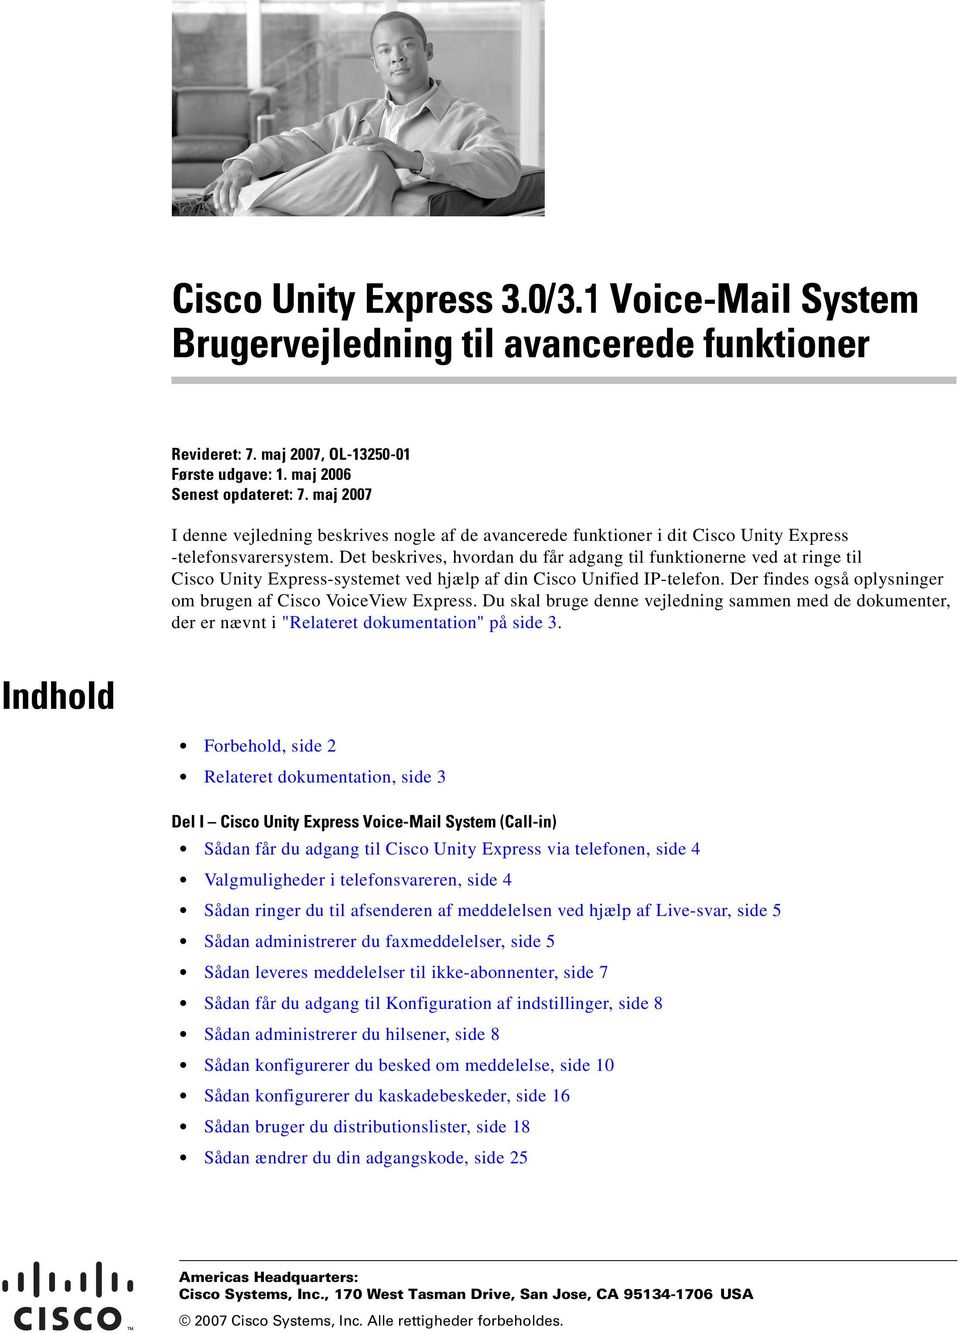 Det beskrives, hvordan du får adgang til funktionerne ved at ringe til Cisco Unity Express-systemet ved hjælp af din Cisco Unified IP-telefon.